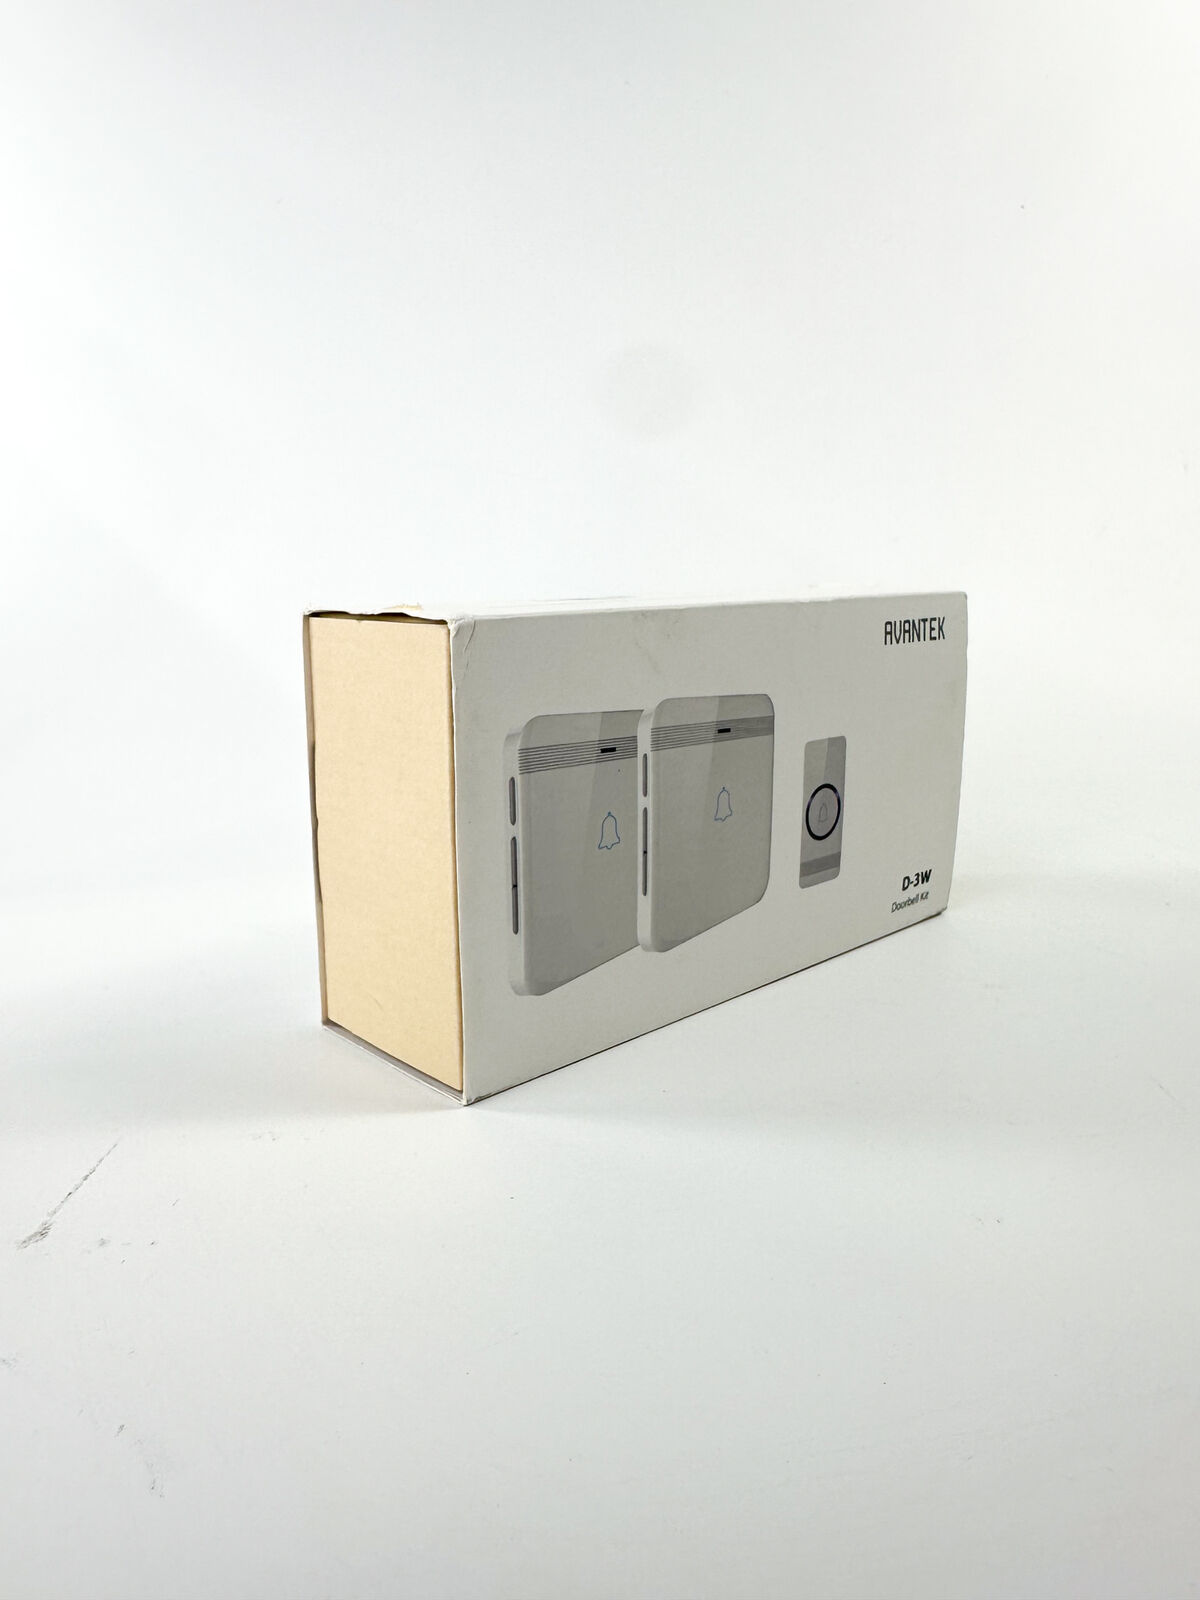 AVANTEK Wireless Doorbell, D-3W Waterproof Door Chime Kit